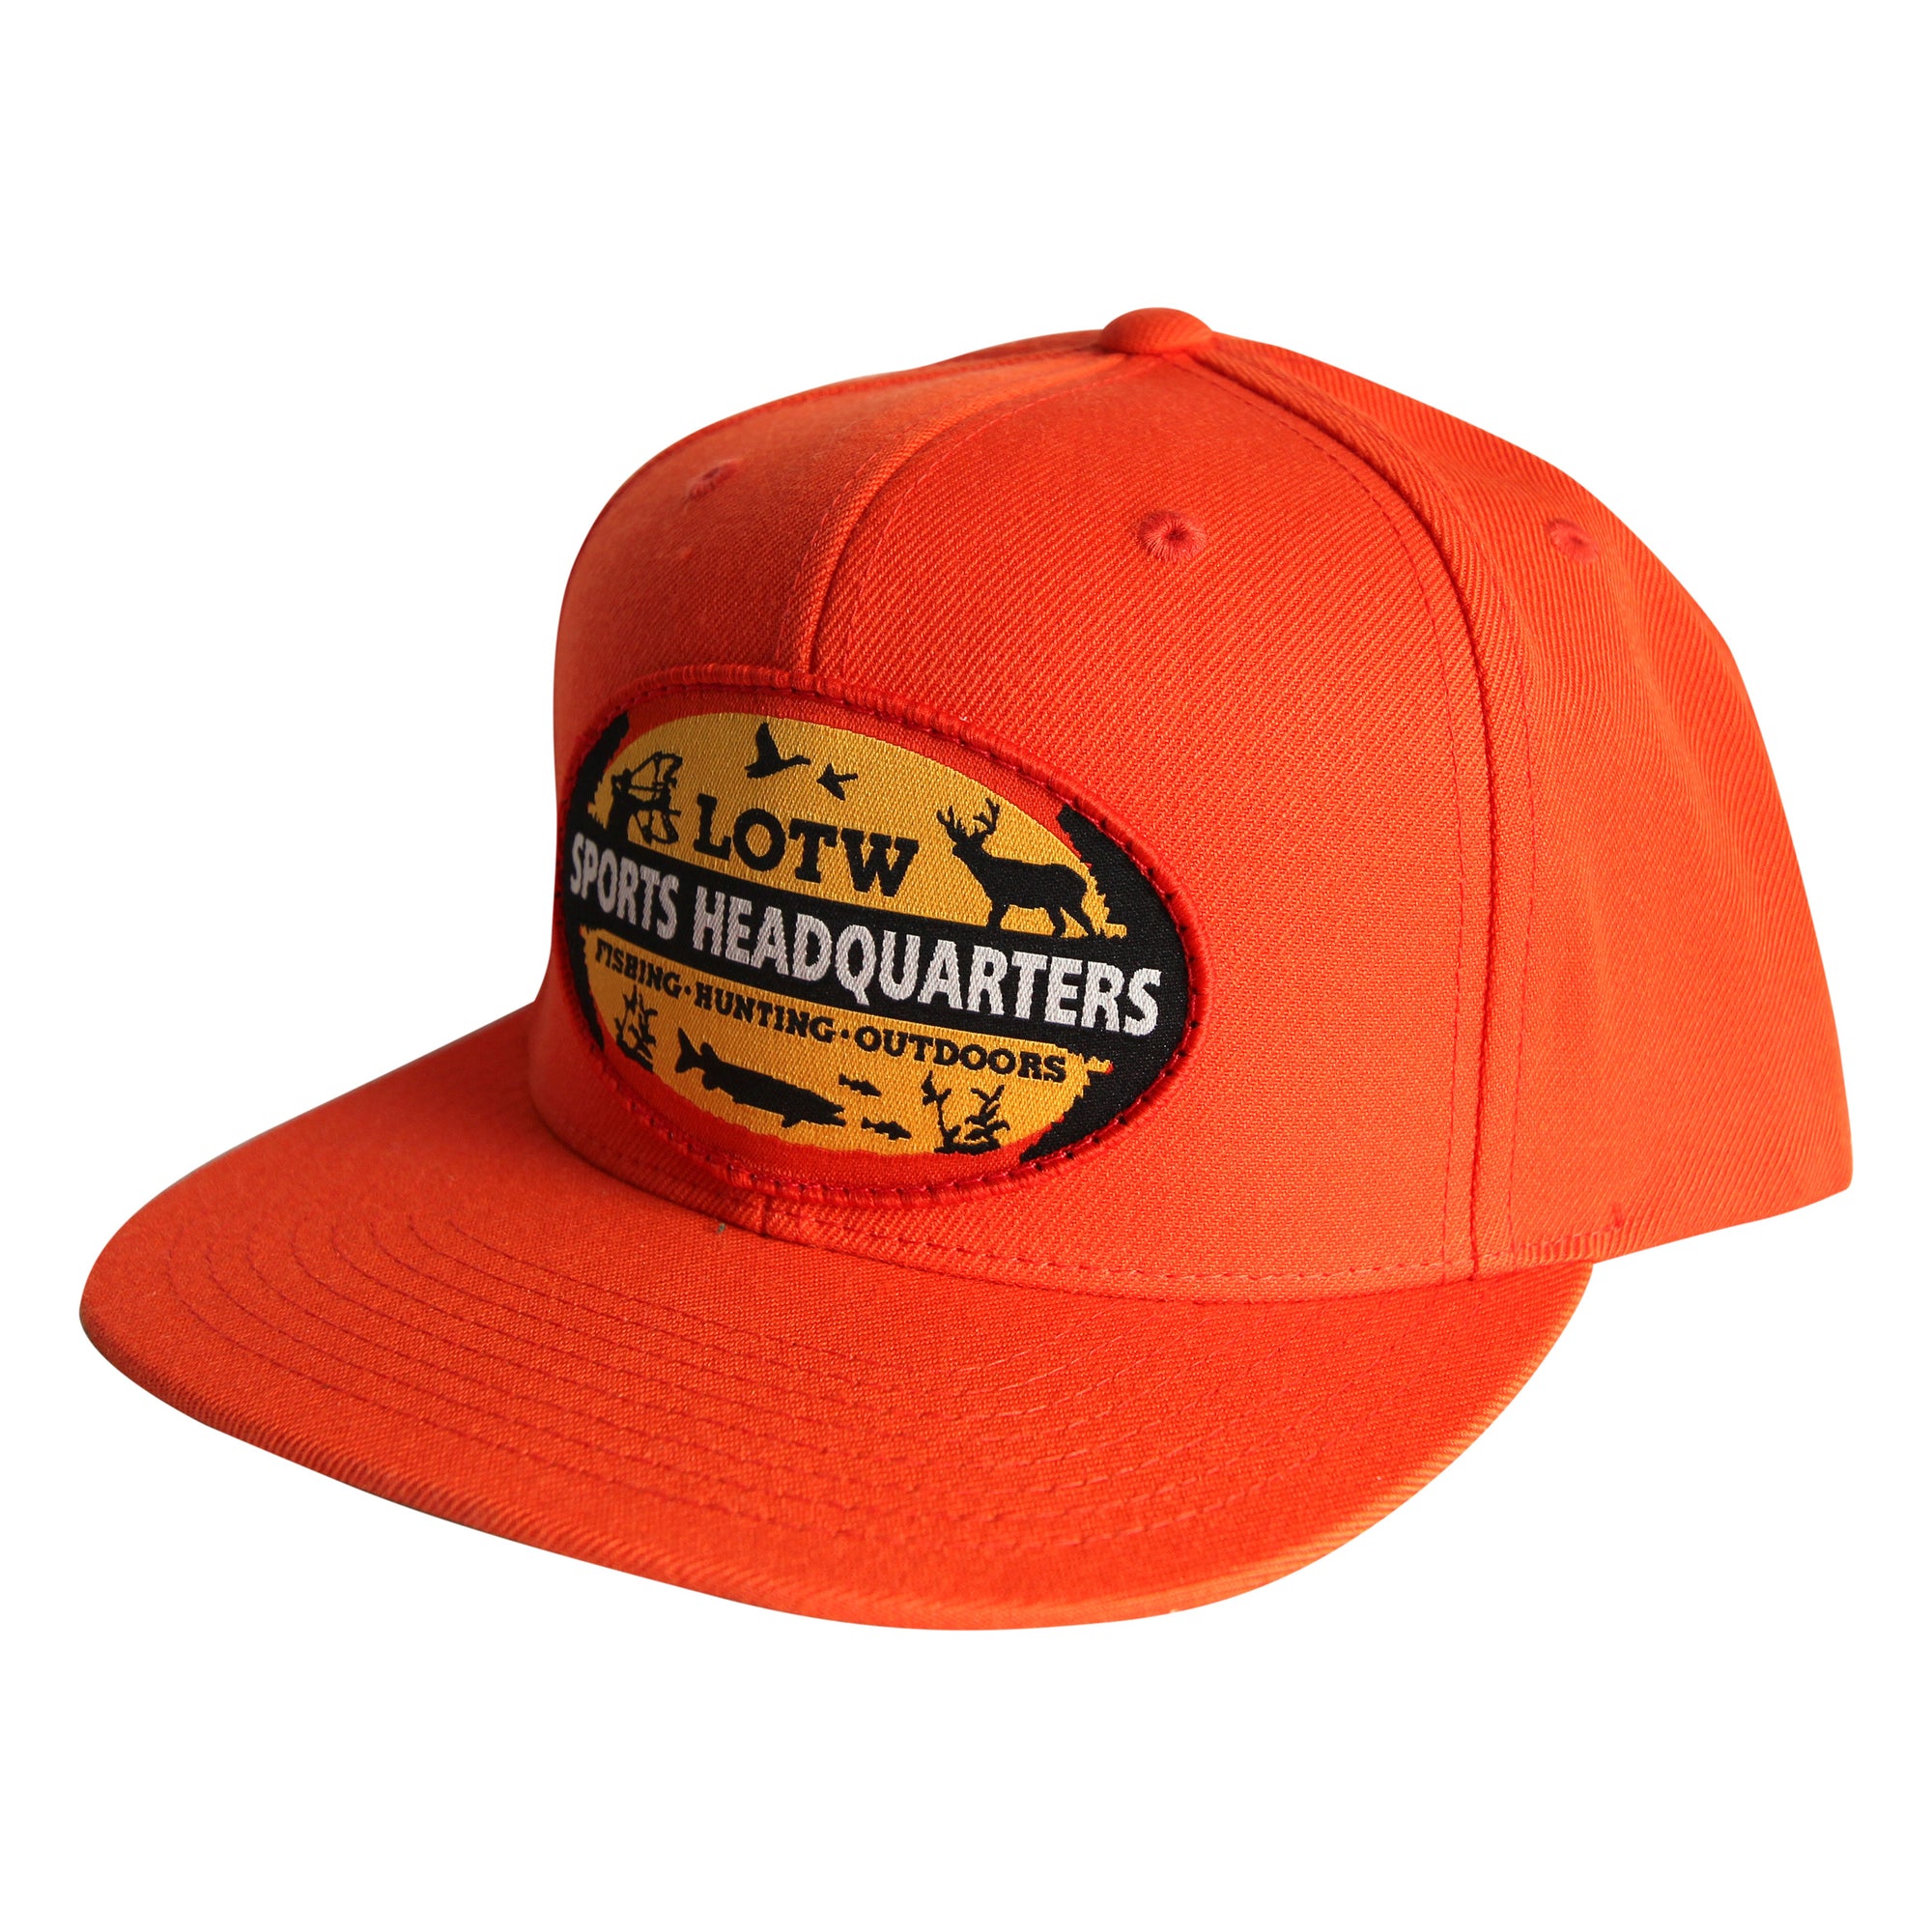 LOTW Sports Headquarters Classic Flat Visor Snapback Hats - Red